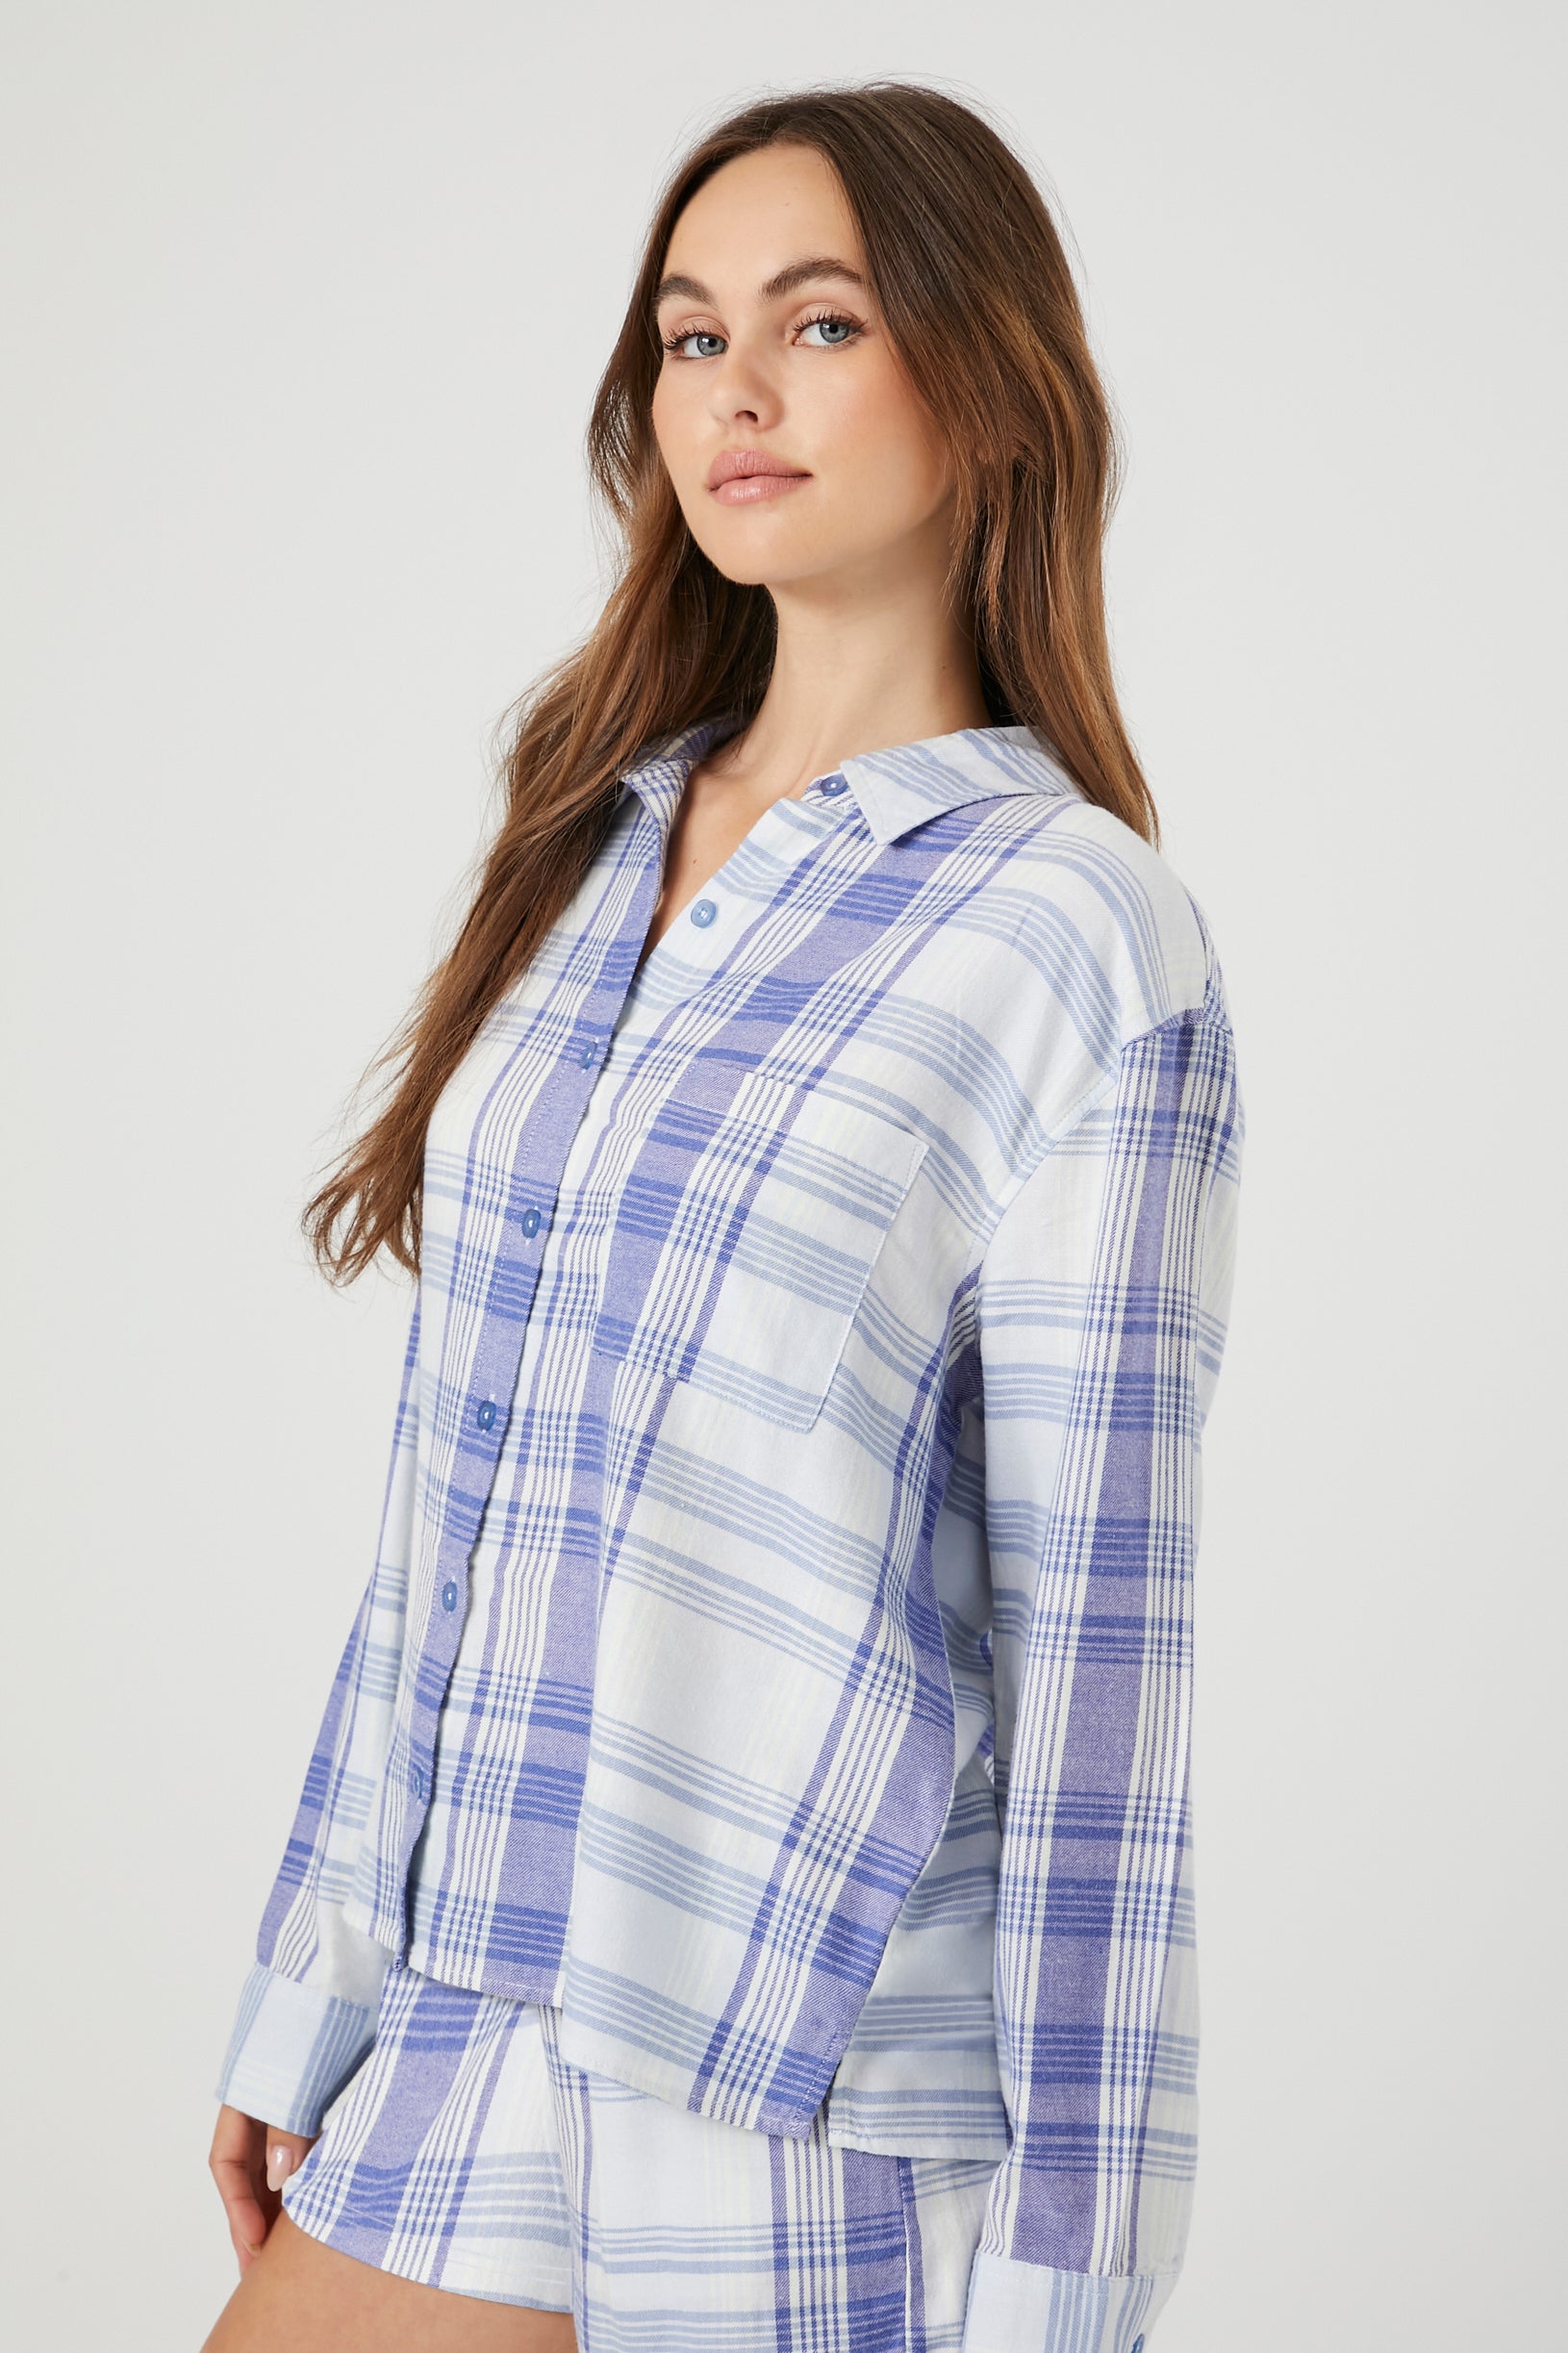 Bluemulti Plaid Flannel Pajama Shirt 1